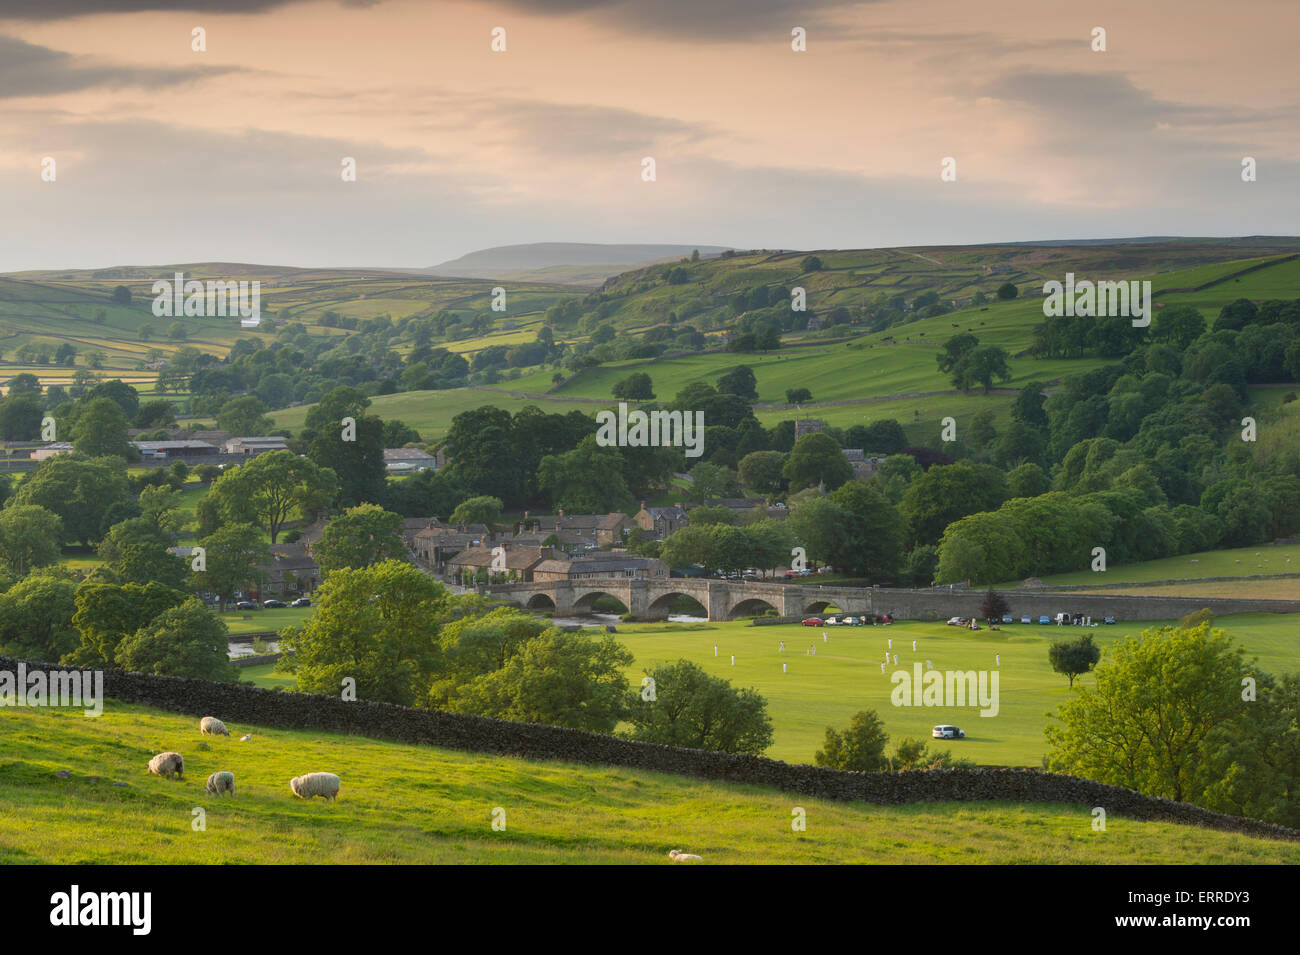 Idylle rurale - soirée d'été ensoleillé, belle vue sur campagne vallonnée, pittoresque village & cricket - Tonbridge, Yorkshire, Angleterre, Royaume-Uni. Banque D'Images